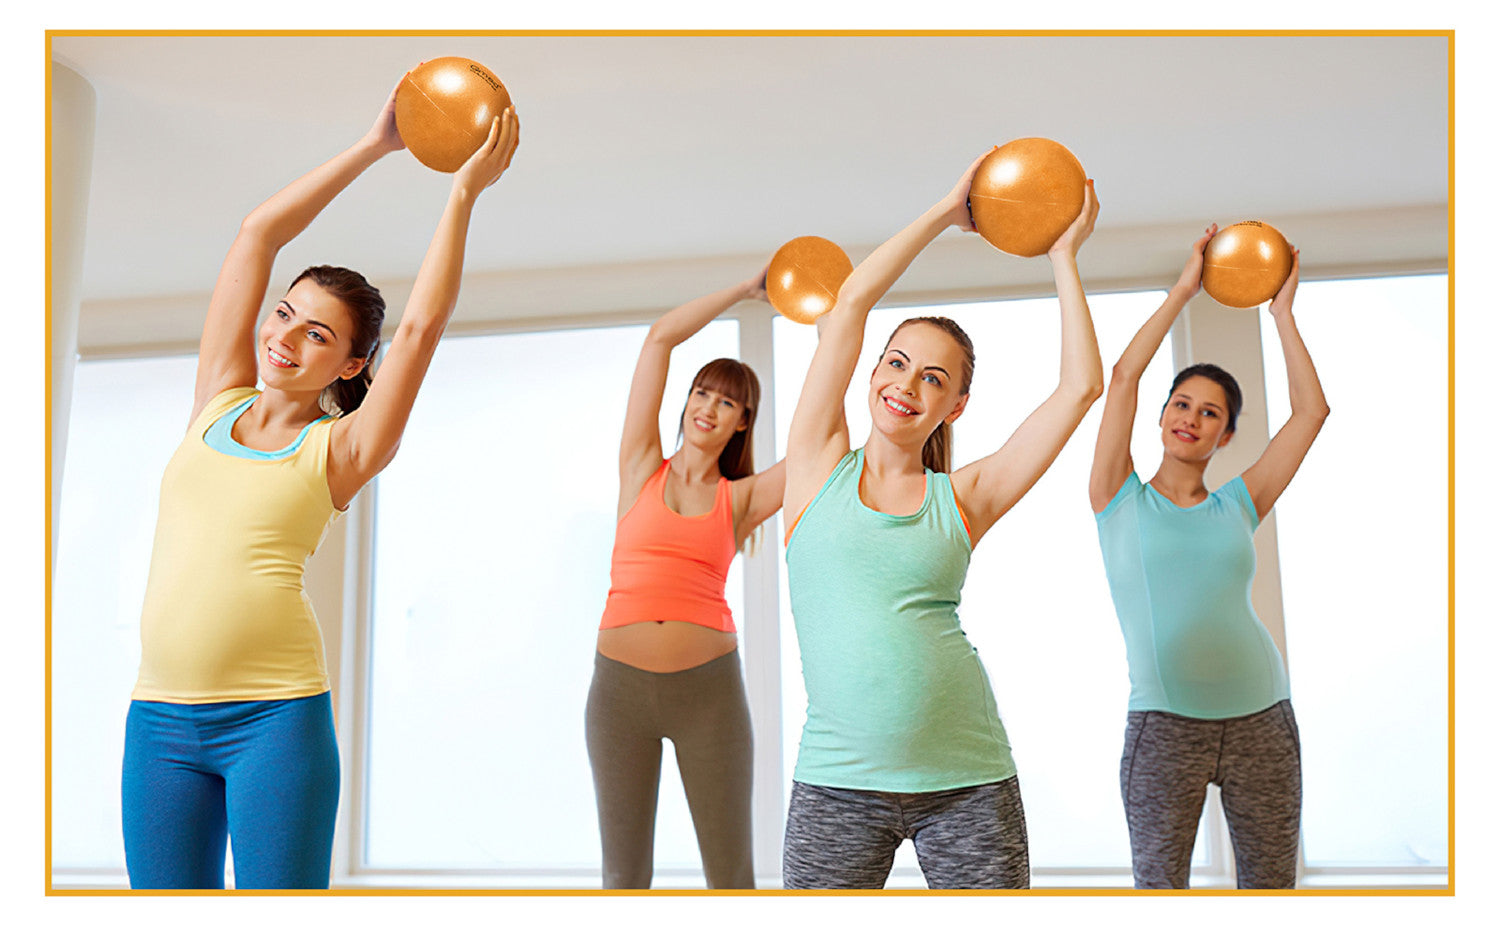 Pilates - un sport idéal pendant la grossesse avec pilates swiss ball